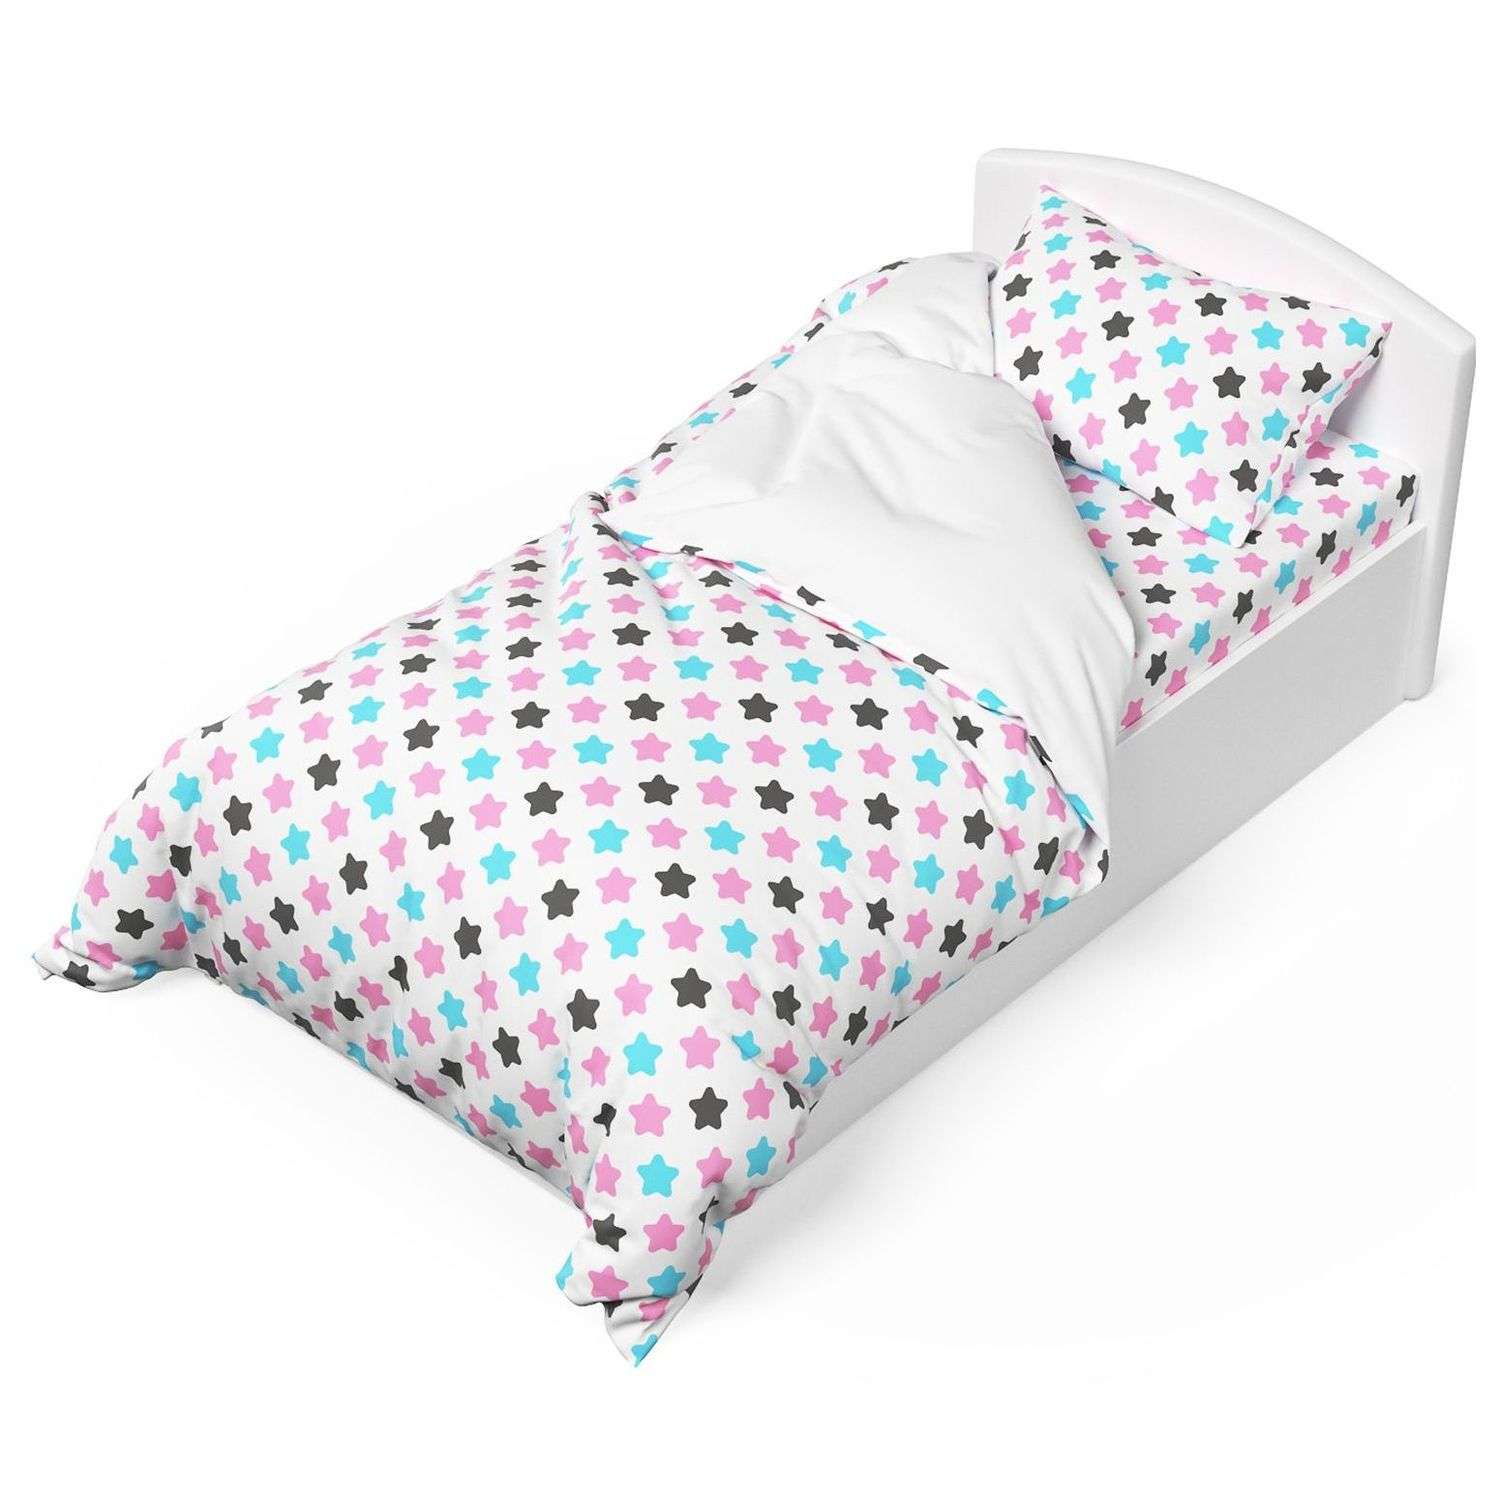 Комплект постельного белья Капризун Розовые звезды 1.5спальный 3предмета - фото 1